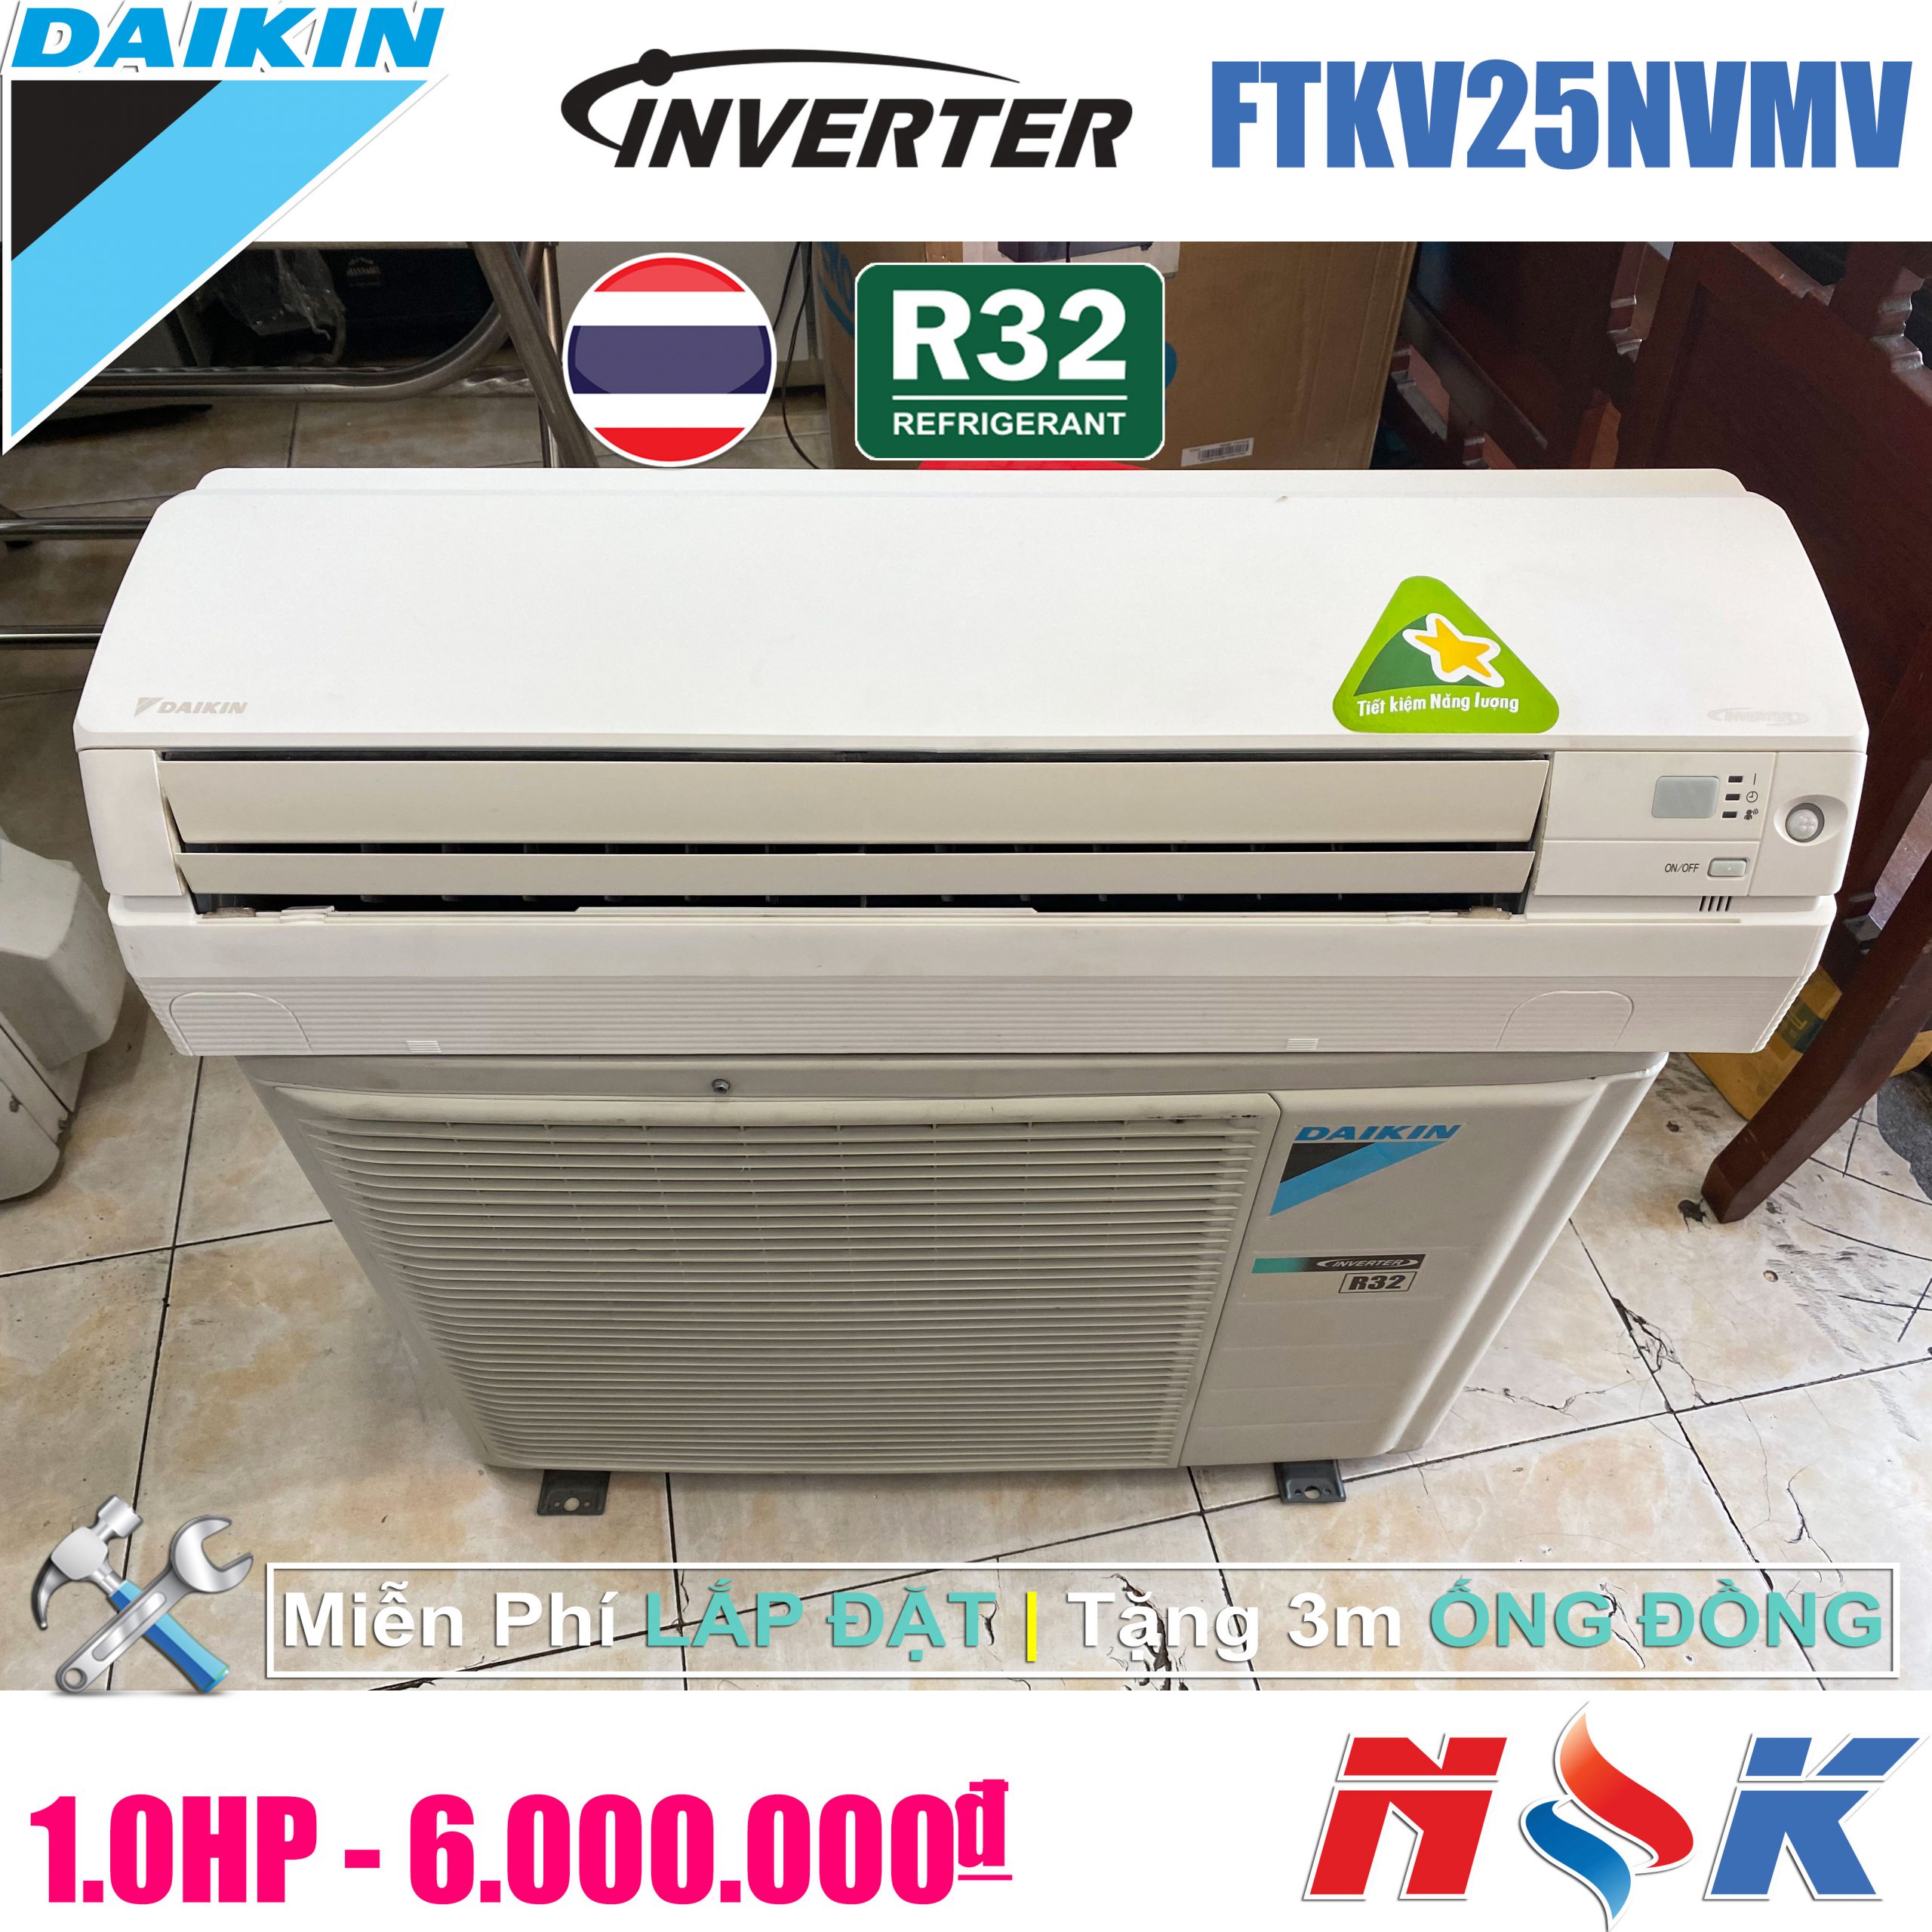 Máy lạnh Daikin Inverter FTKV25NVMV 1HP